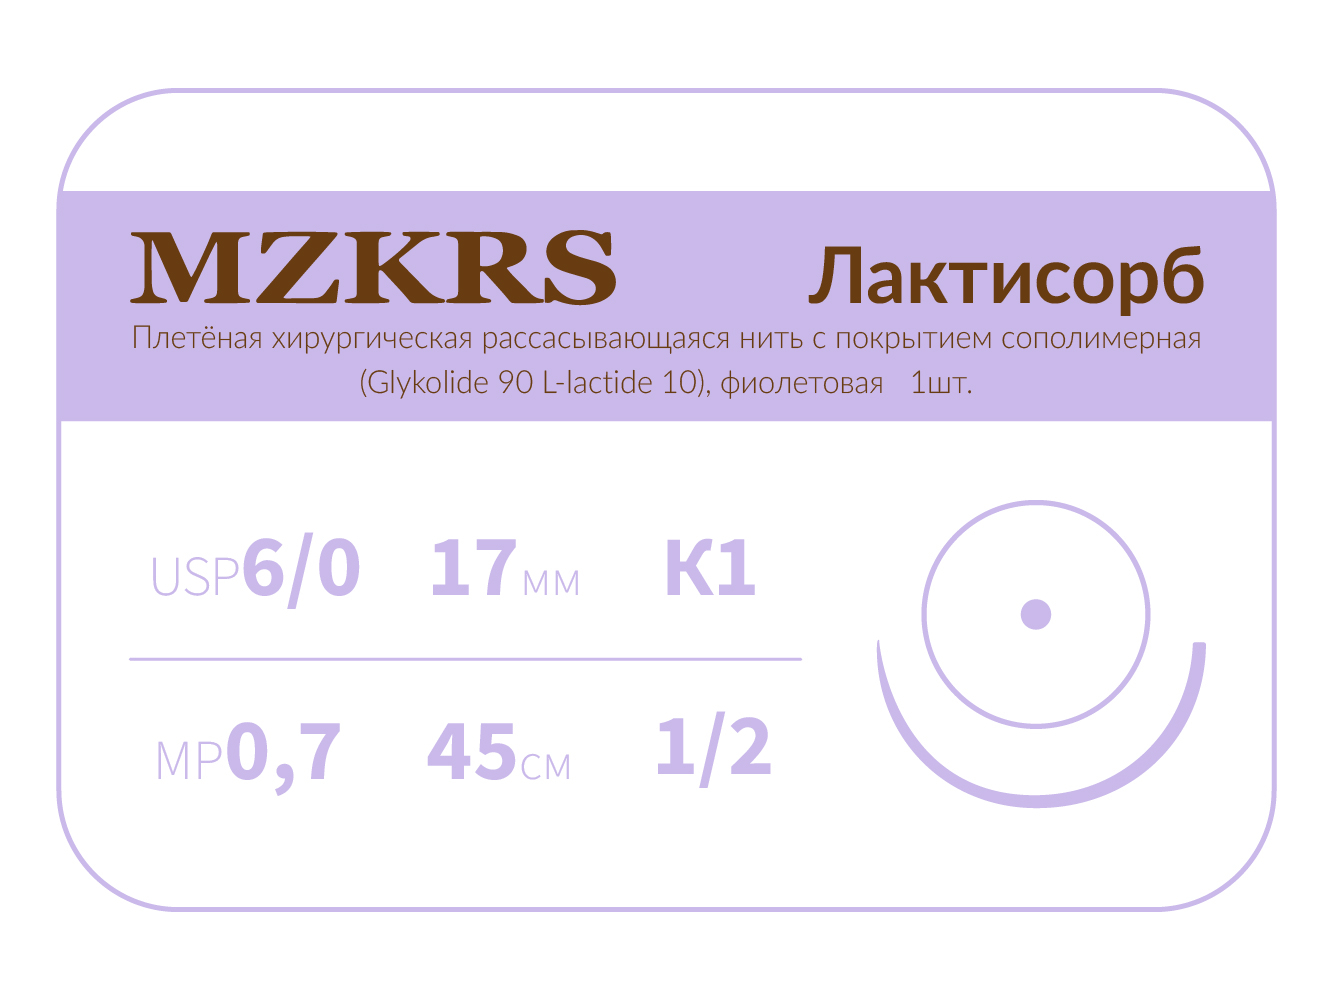 1712К1-Premium-6/0 (0,7)45 ПГЛ ЛАКТИСОРБ хирургическая нить сополимерная, MZKRS (Россия)